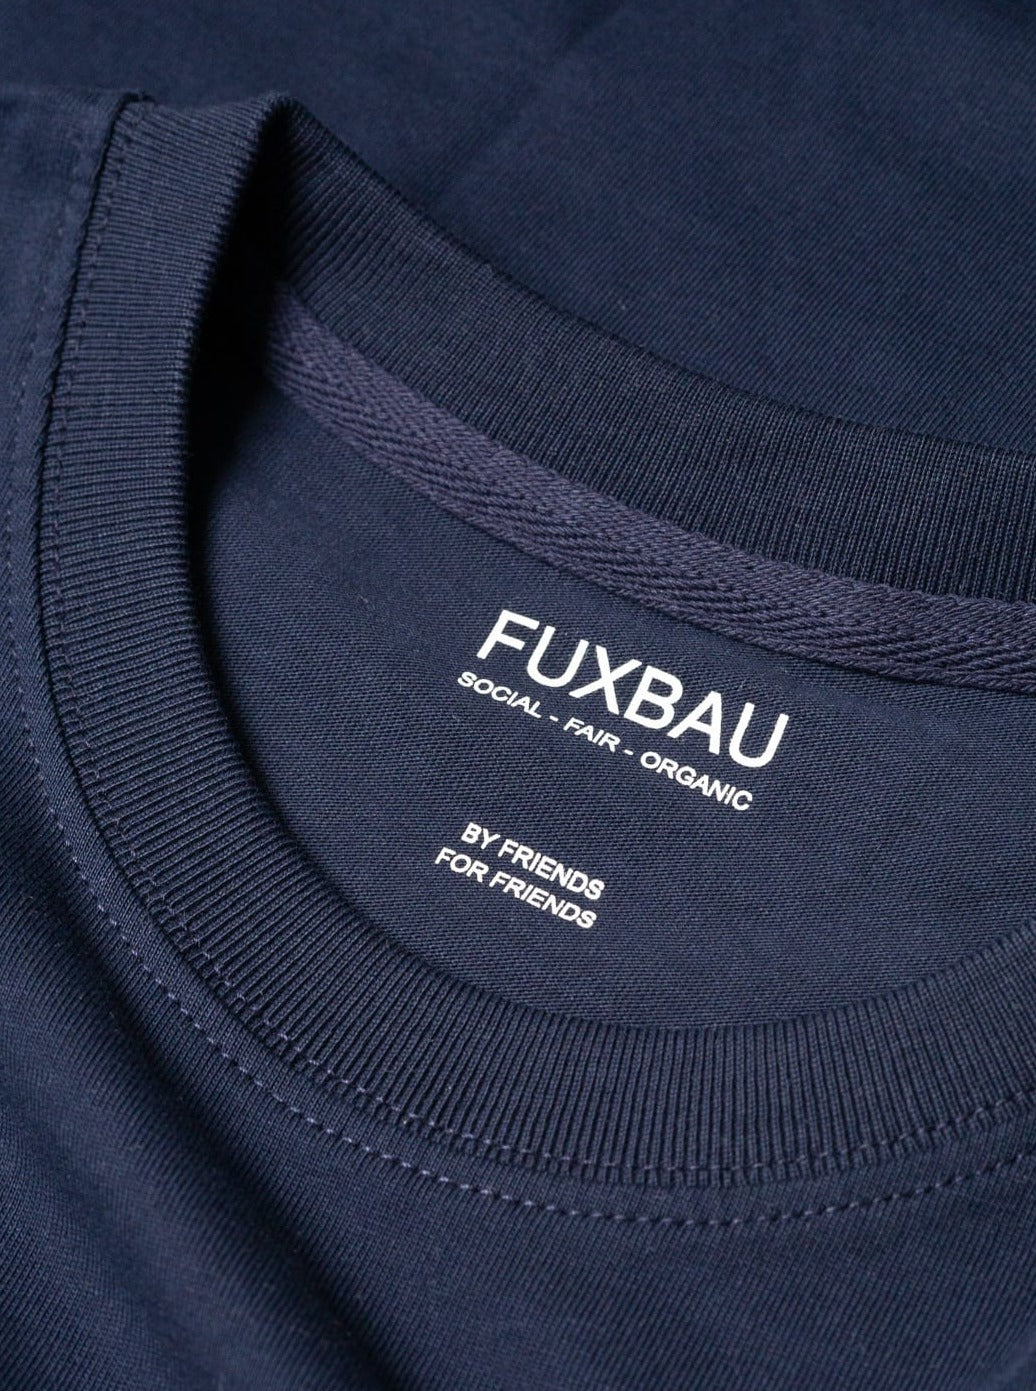 qualitiativ hochwertig, preiswert und nachhaltiges Basic T-Shirt in navy von FUXBAU.